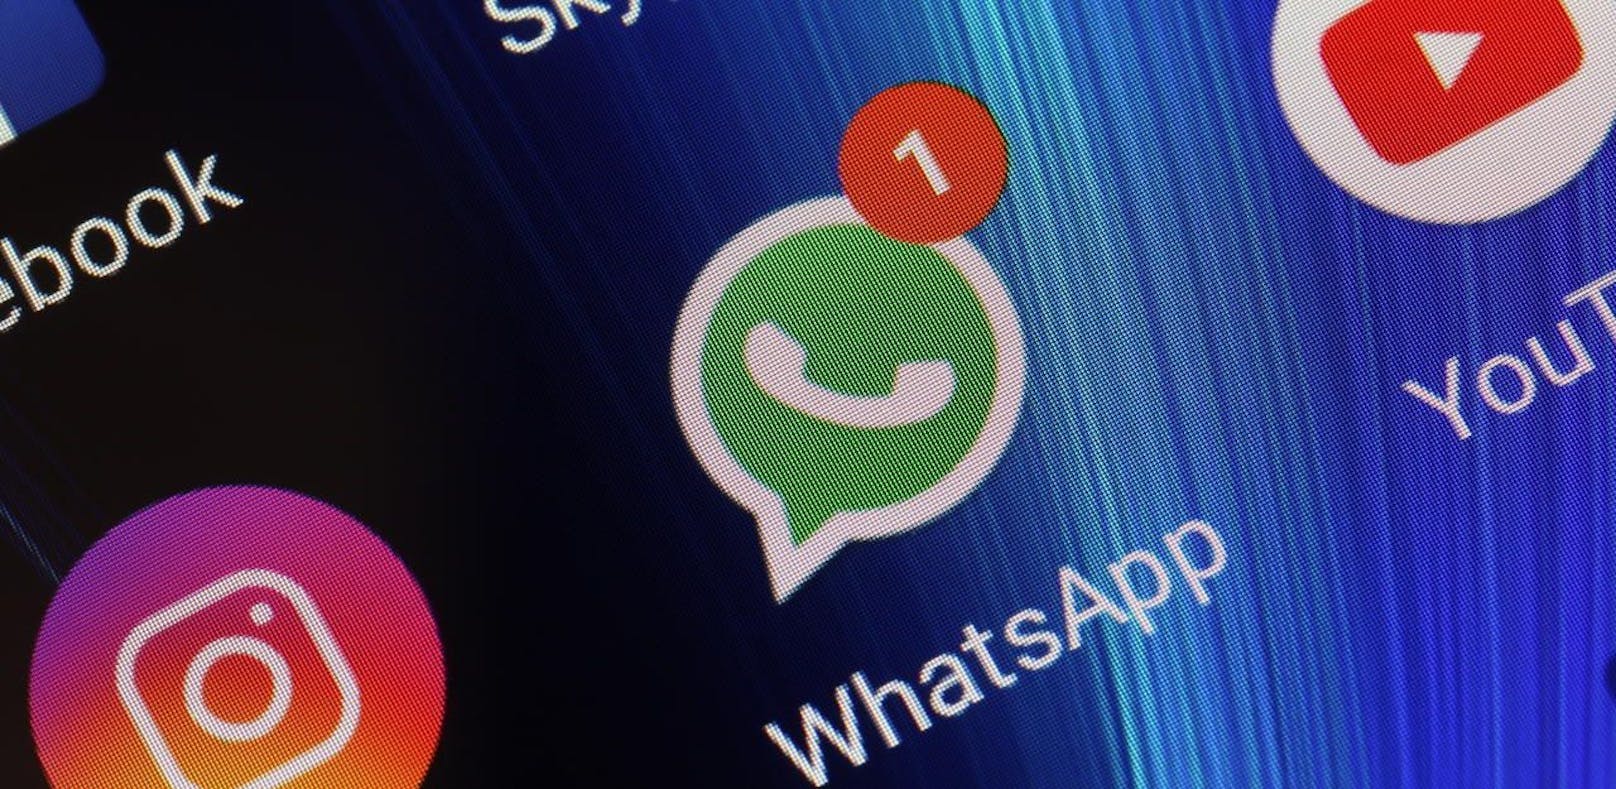 WhatsApp kämpft mit einer Message, die Smartphones abstürzen lässt.